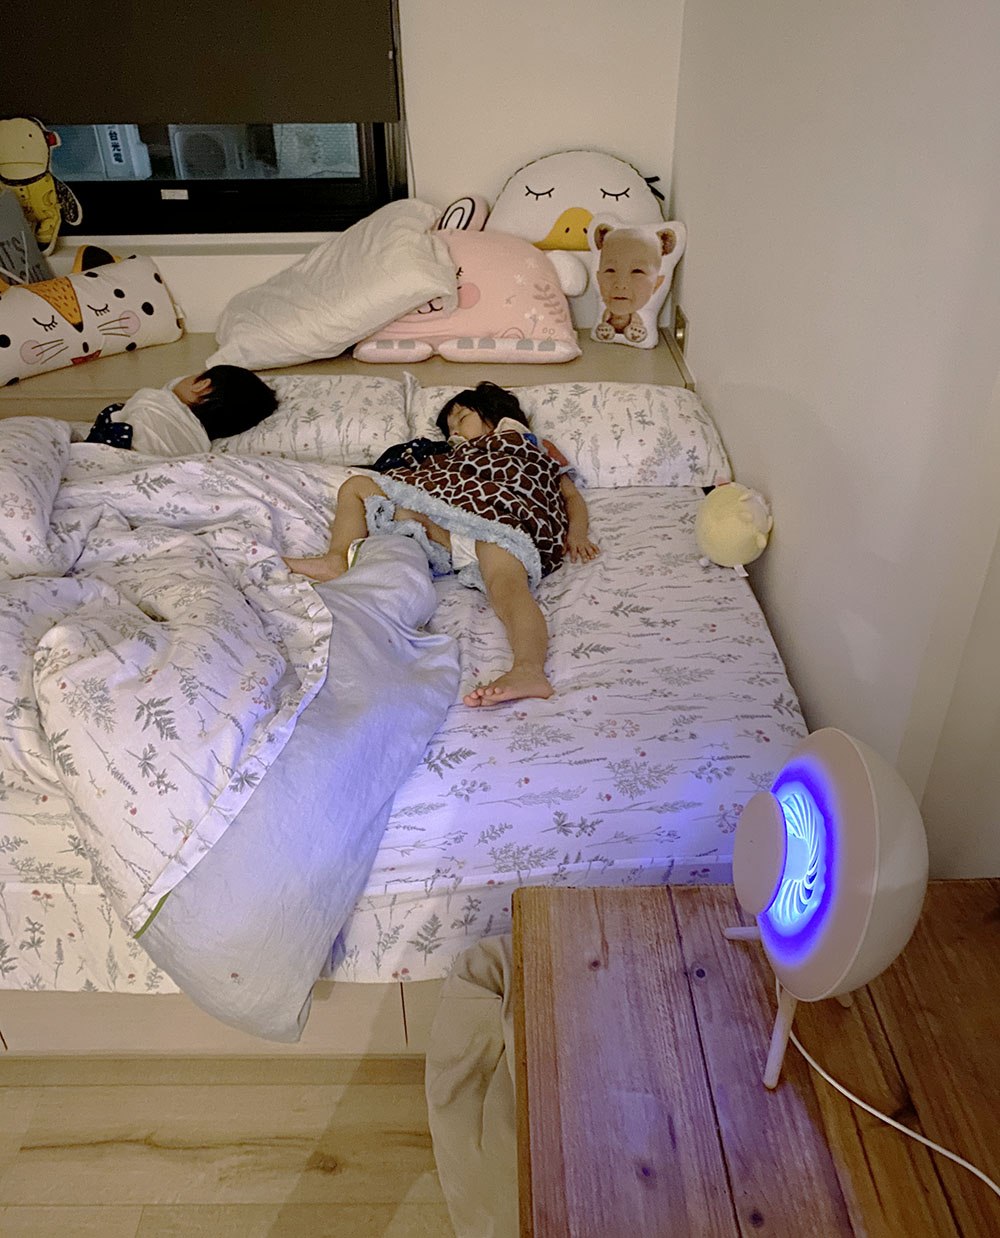 [啾團] 蚊子走開!別靠近我的小孩.讓小孩好好睡的韓國ifif靜音強效USB滅蚊燈(本次加開超美英國W10 全球首款不鏽鋼折疊杯)